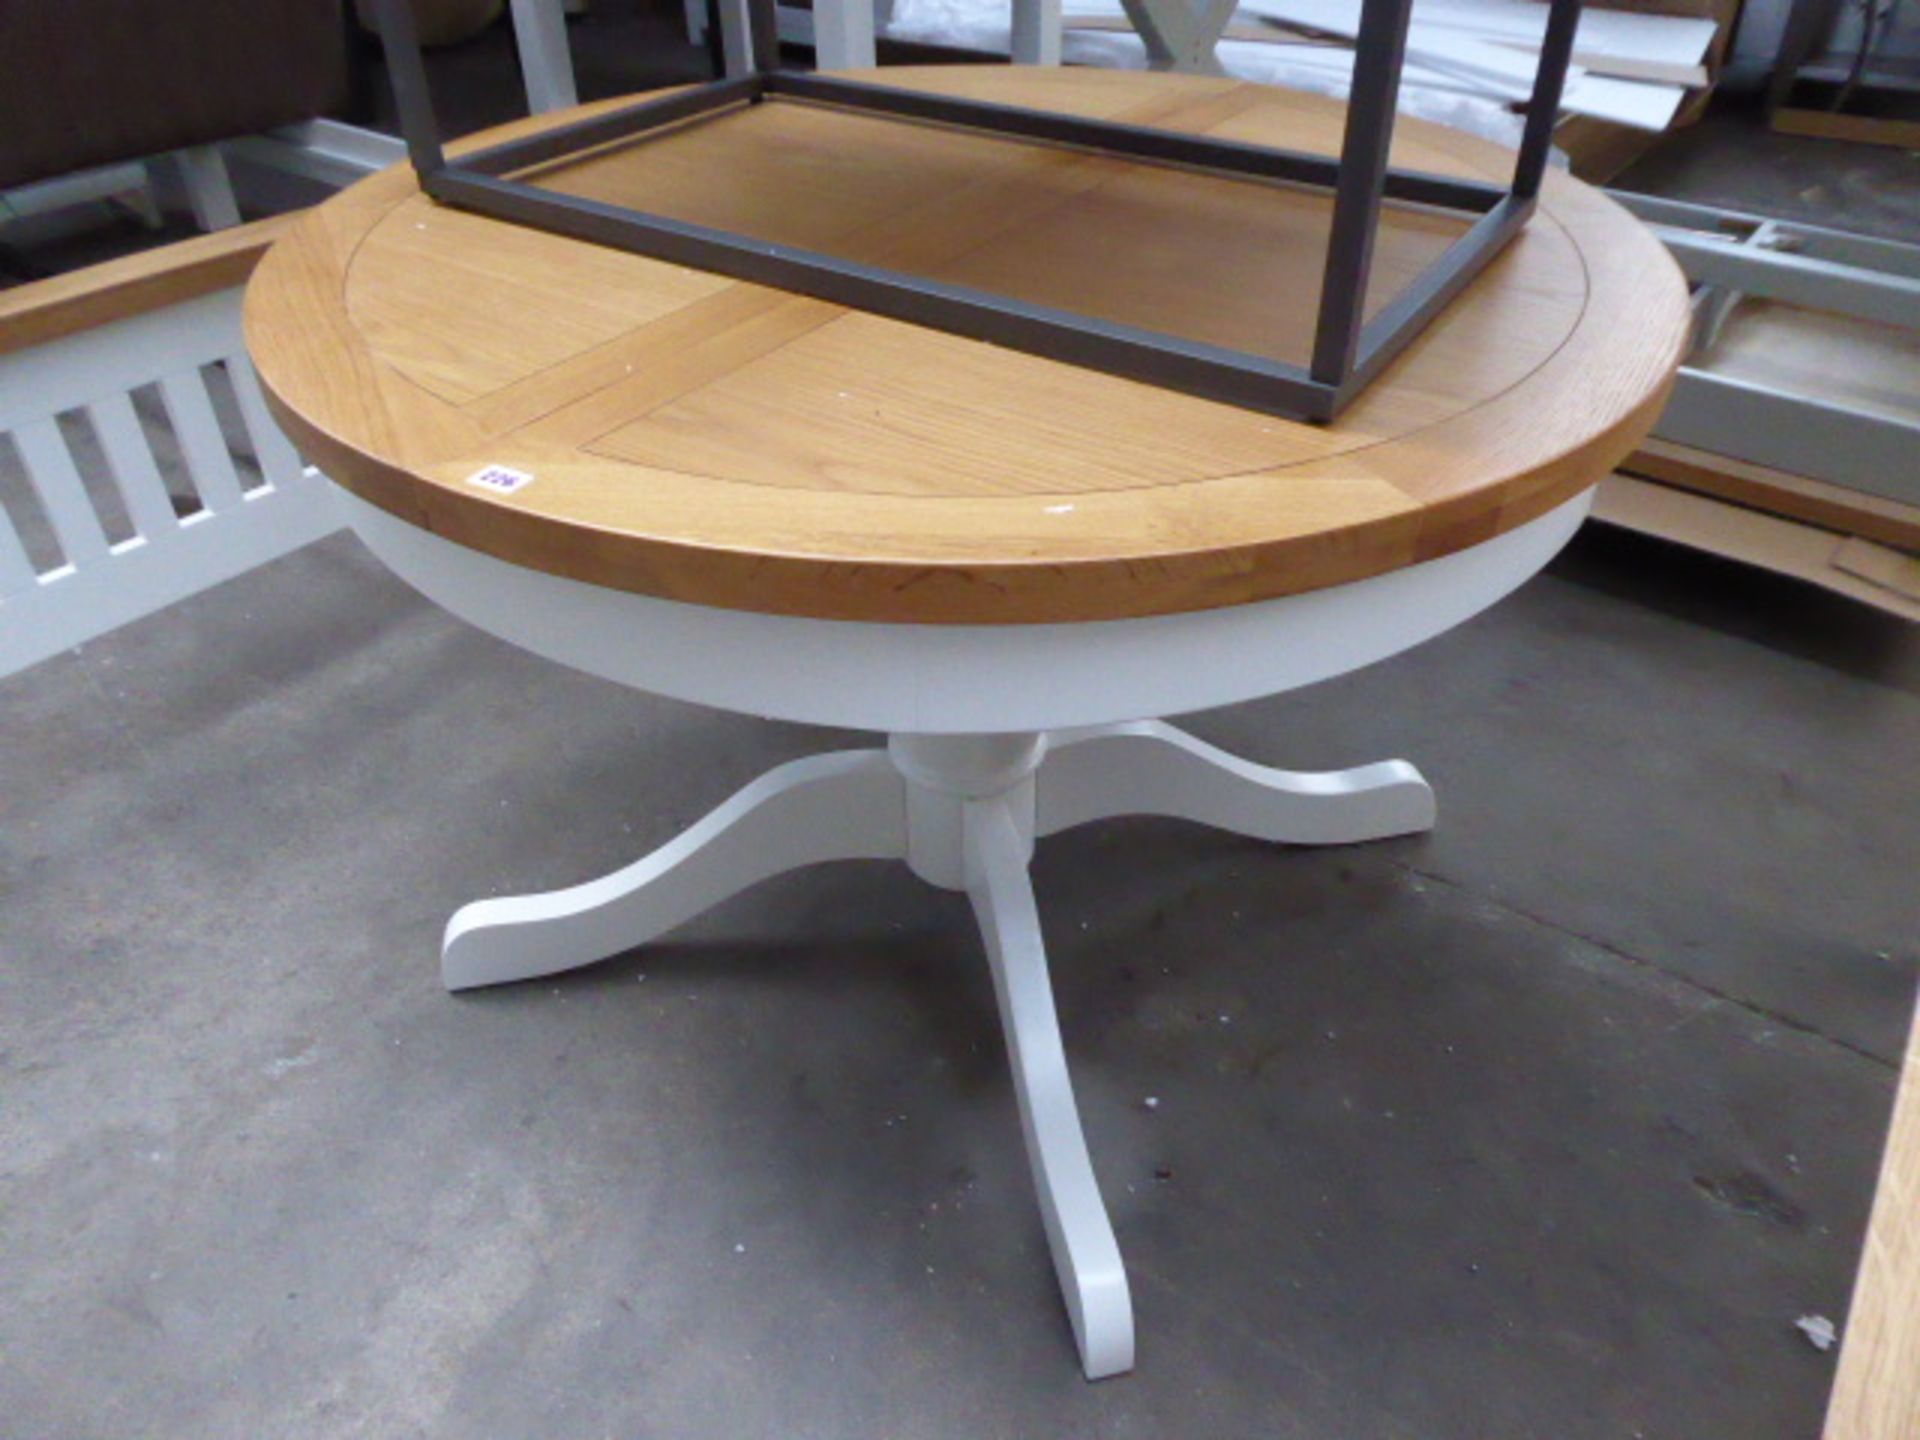 White painted oak topped extending dining table, 110cm diameter